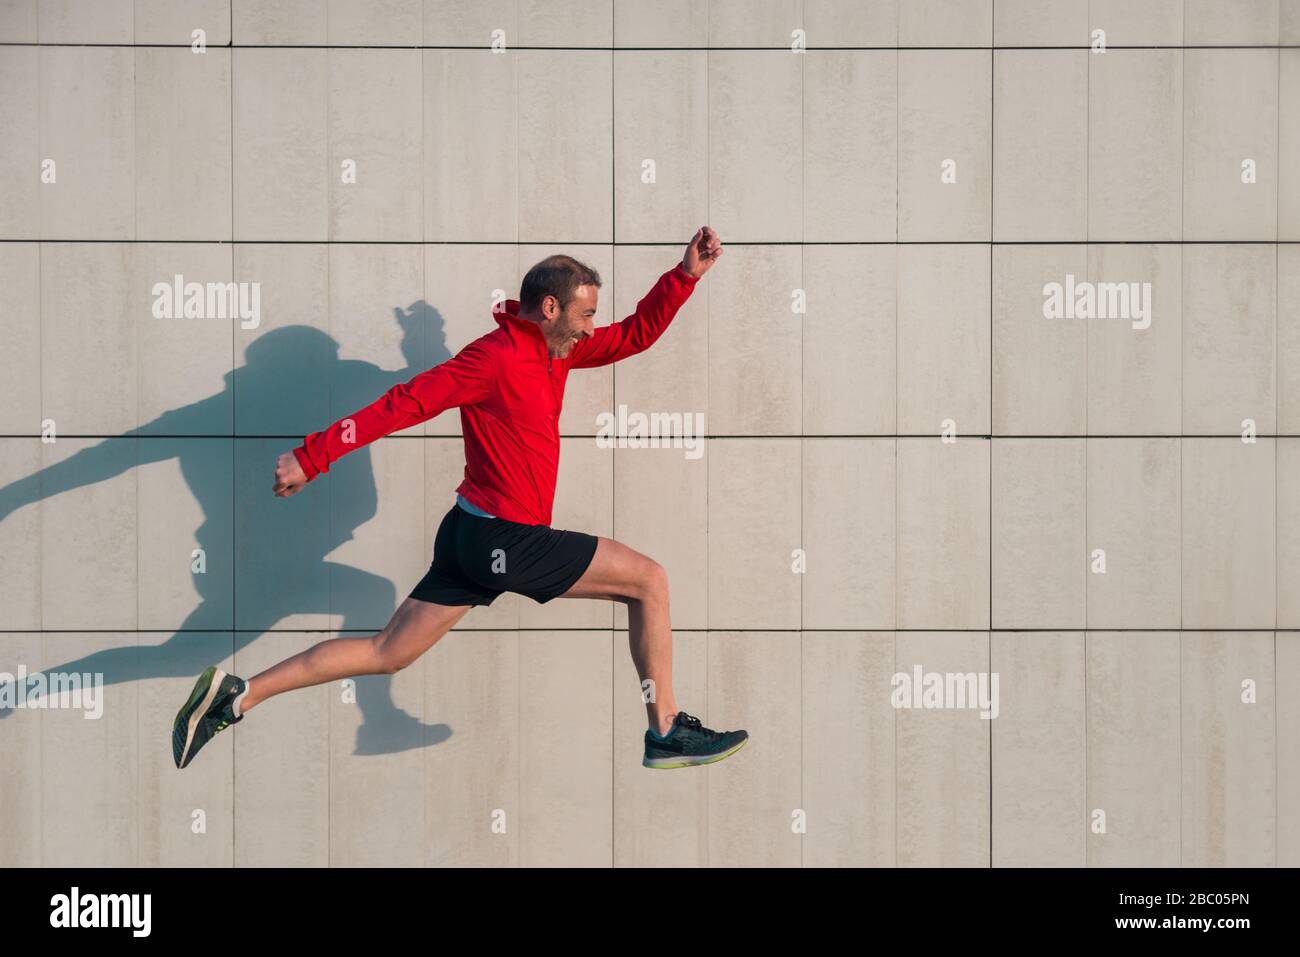 Atleta uomo correre e saltare in una giornata di sole con la sua ombra gettata su un muro bianco. Foto Stock